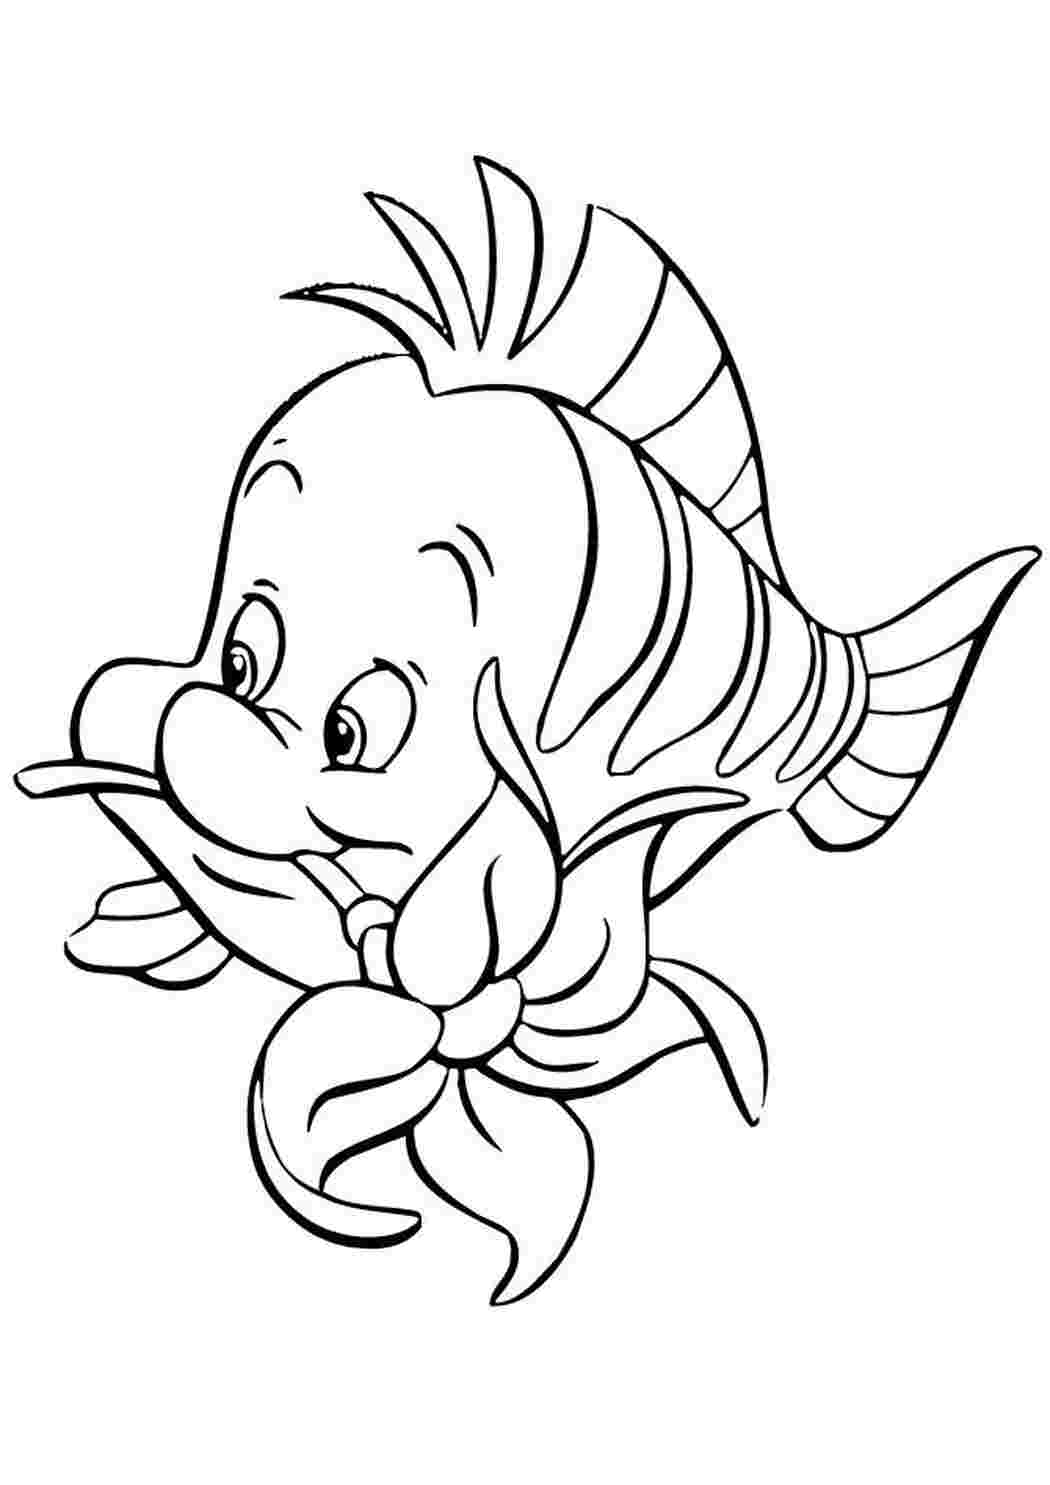 Раскраски картинки на рабочий стол онлайн Рыбка с цветком в зубах из мультфильмов Распечатать раскраски для мальчиков